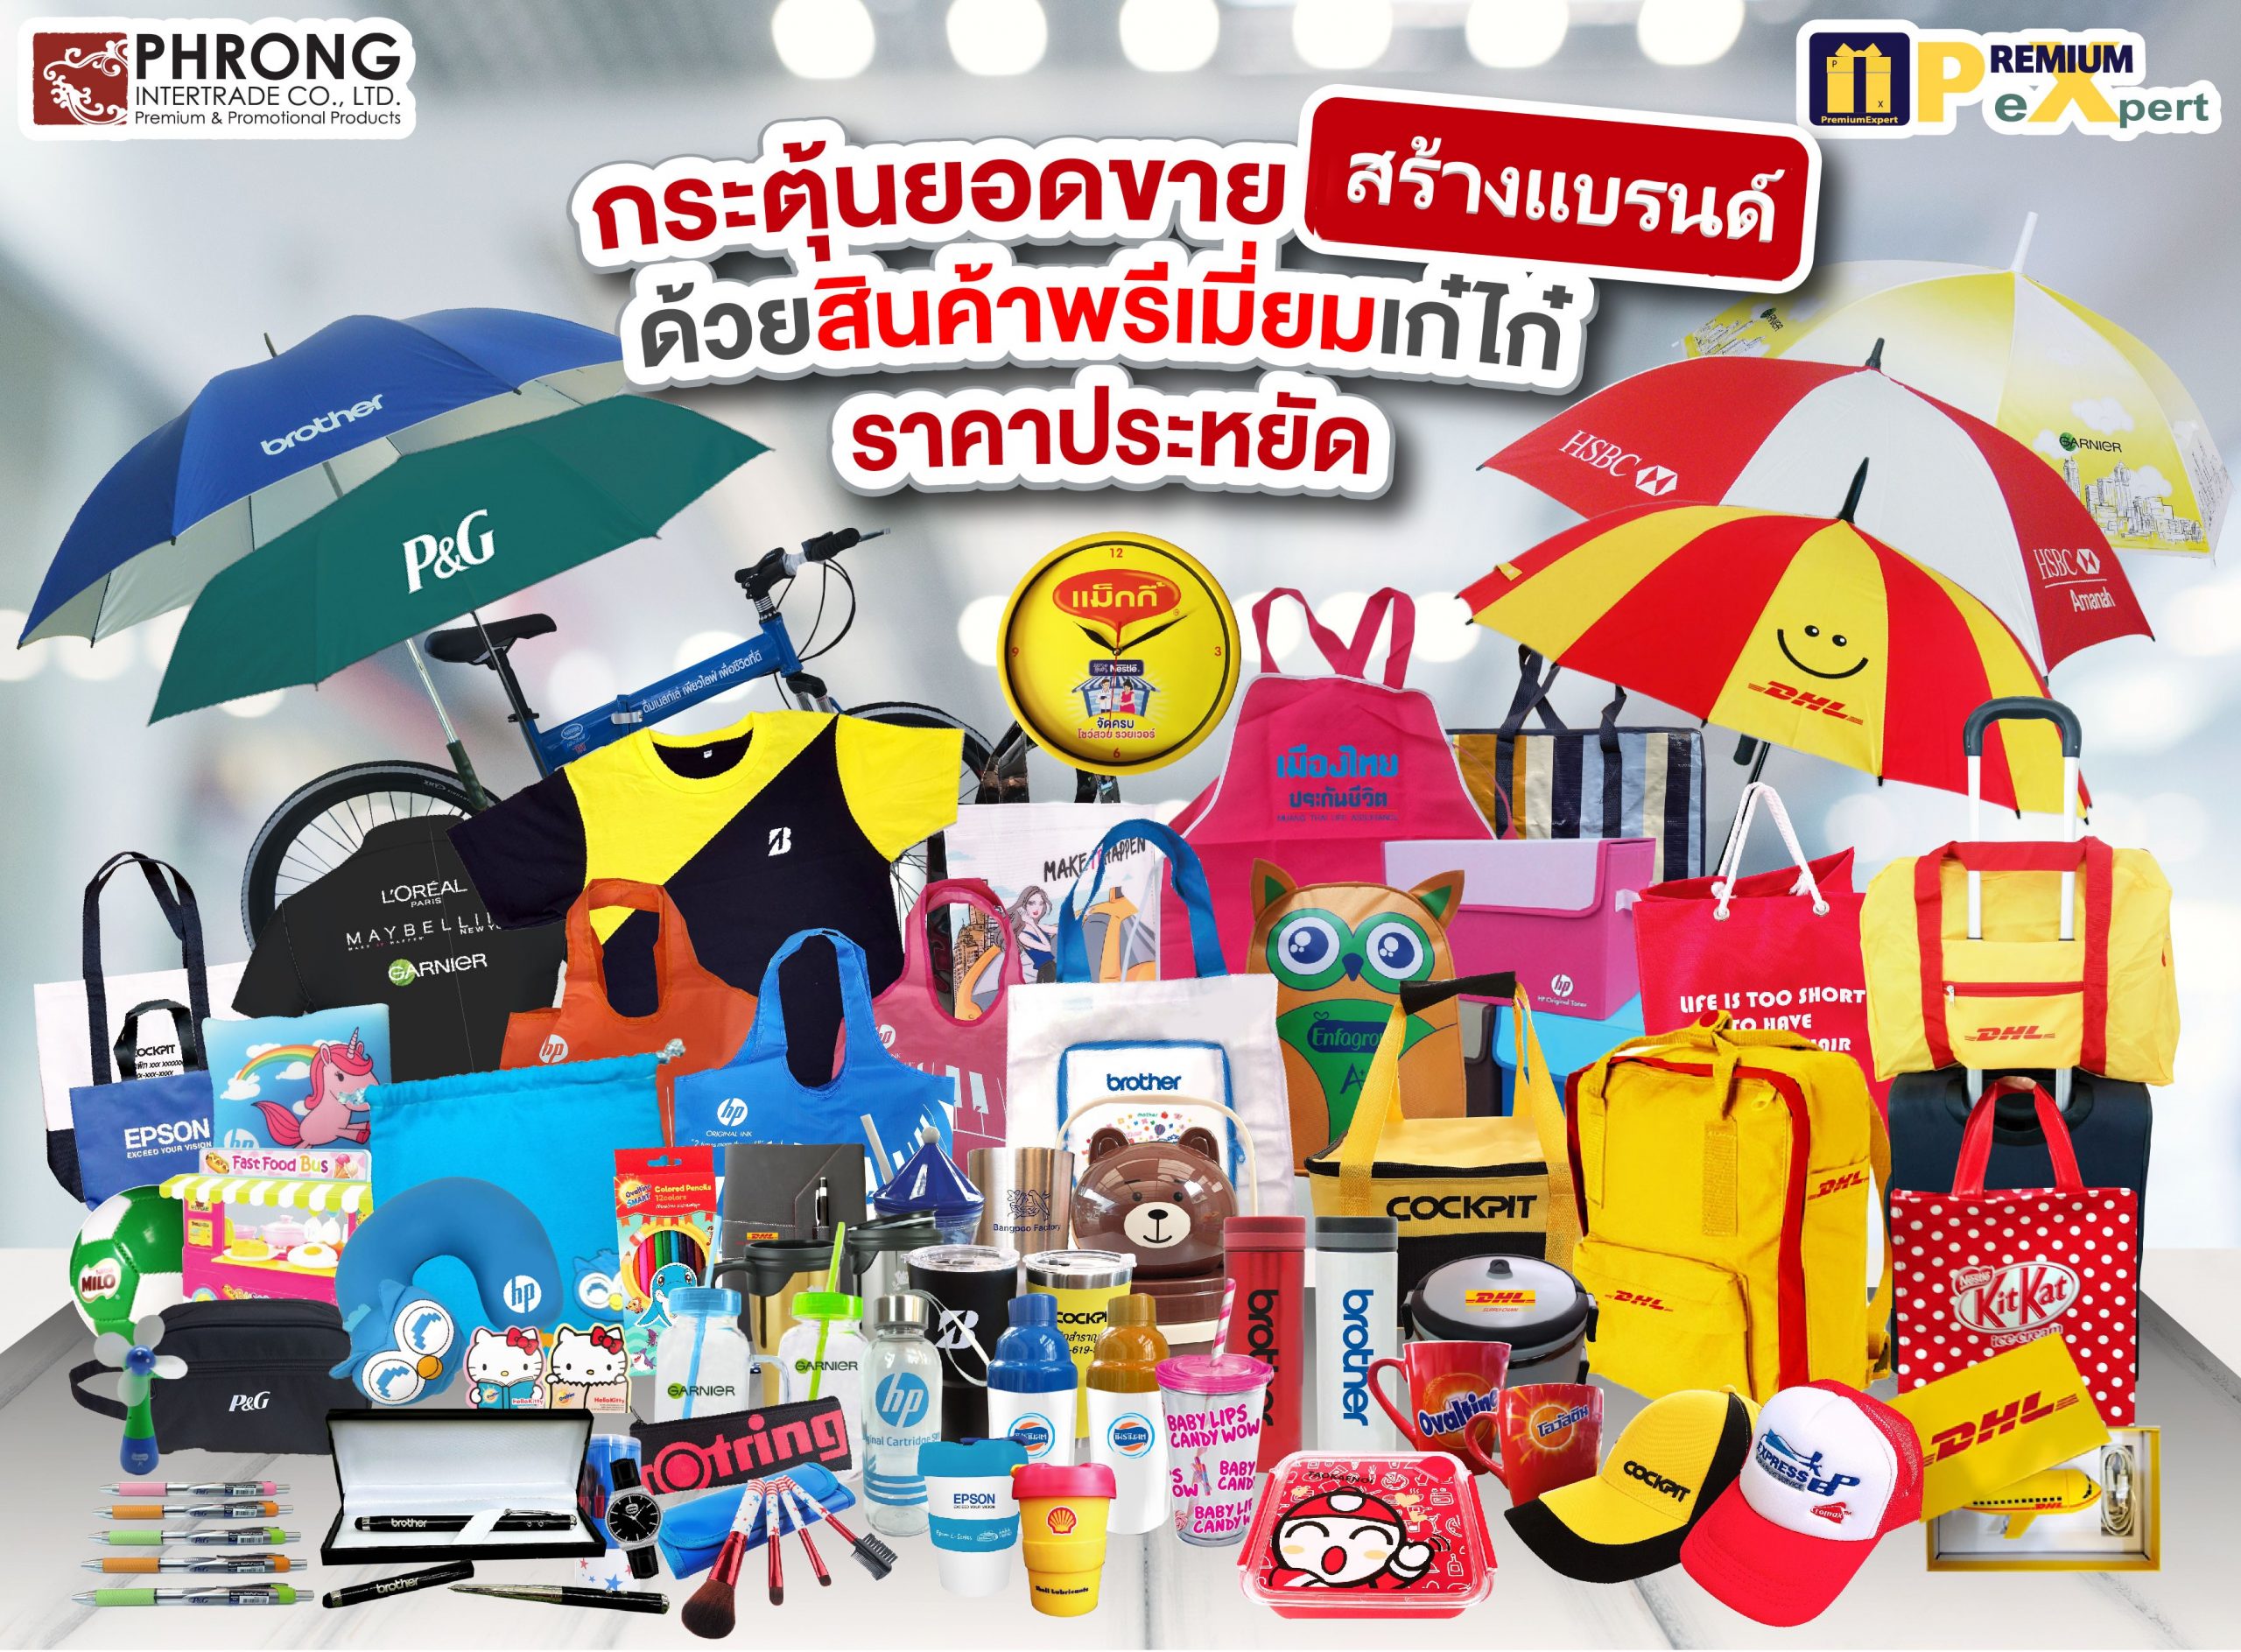 สินค้าพรีเมี่ยม ส่งเสริมการขาย บอลลูน Bacardi Balloon Promotion by Phrong Intertrade สินค้าพรีเมี่ยม ของพรีเมี่ยม ของแจก ของแถม ส่งเสริมการขาย ของขวัญองค์กร ของชำร่วยองค์กร Promotional Corporate gifts & Marketing products